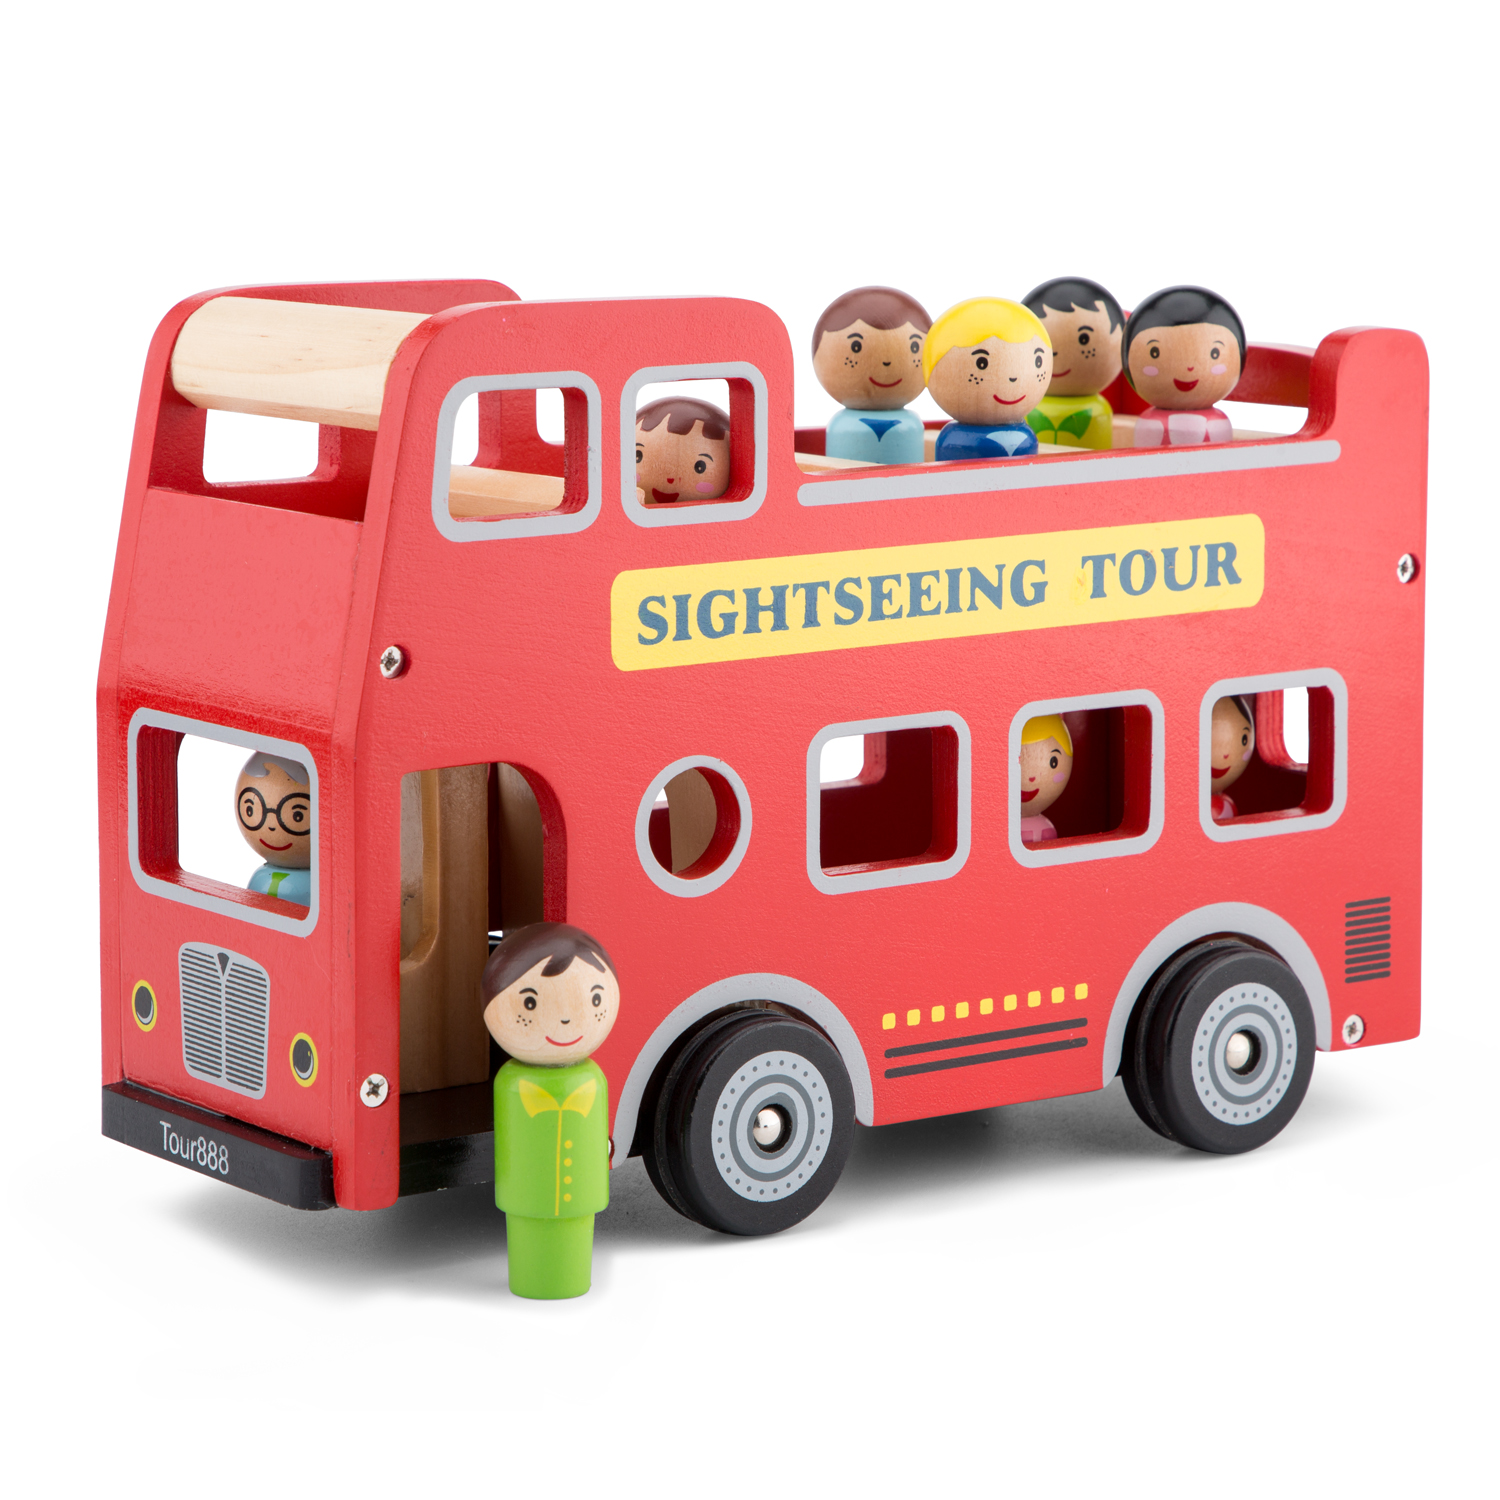 Sightseeing Bus City Tour Bus m. 9 Spielfiguren aus Holz Holzspielzeug